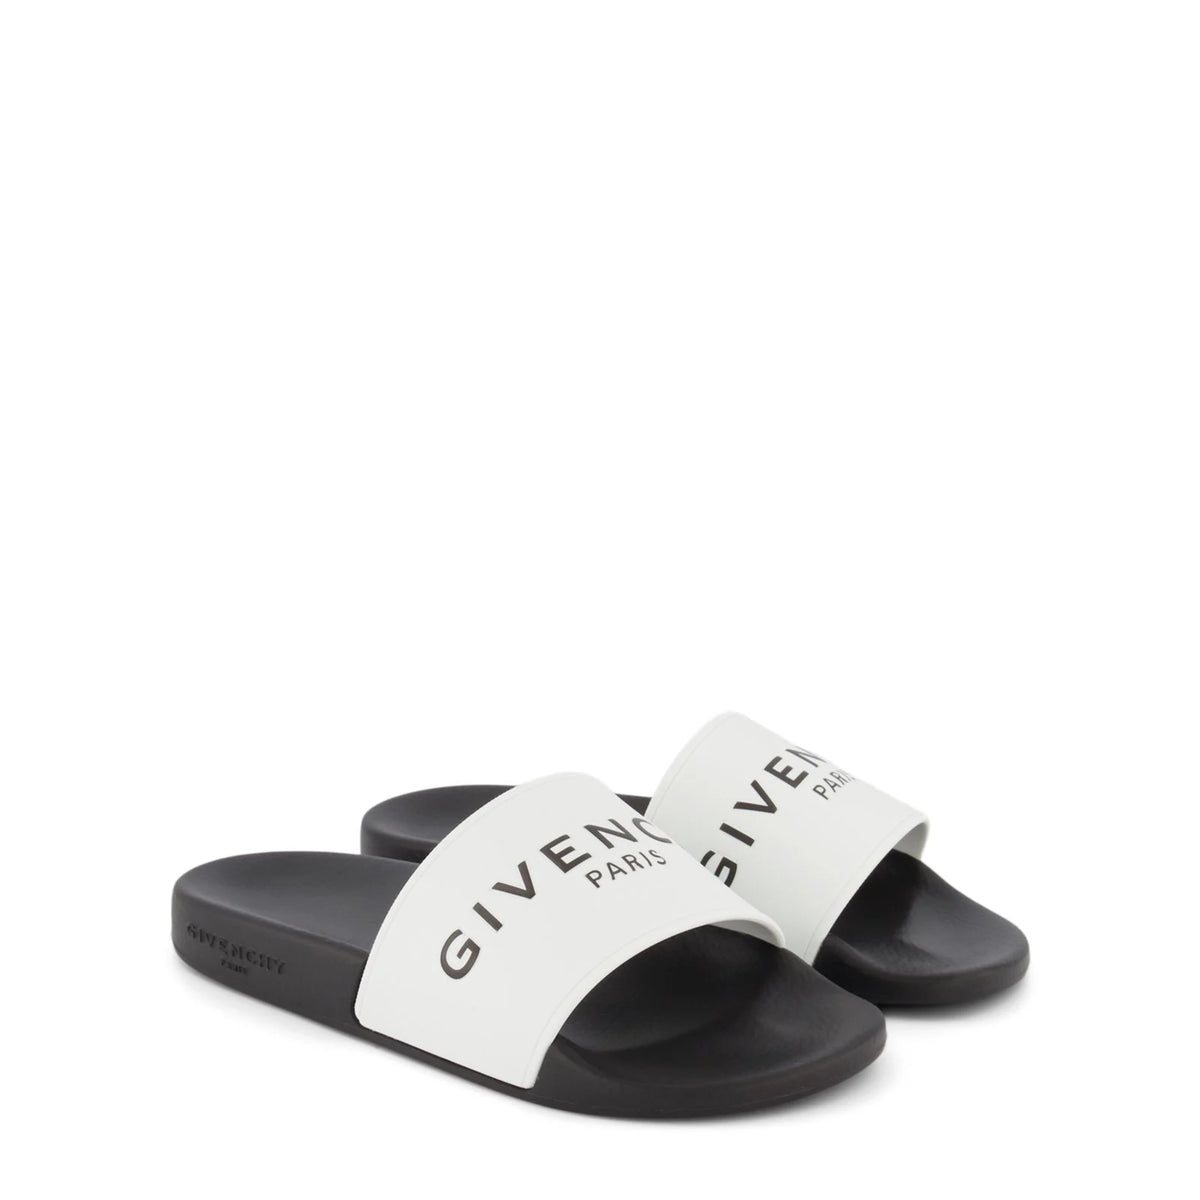 Givenchy Paris Flat Sandals White Black – AM originals